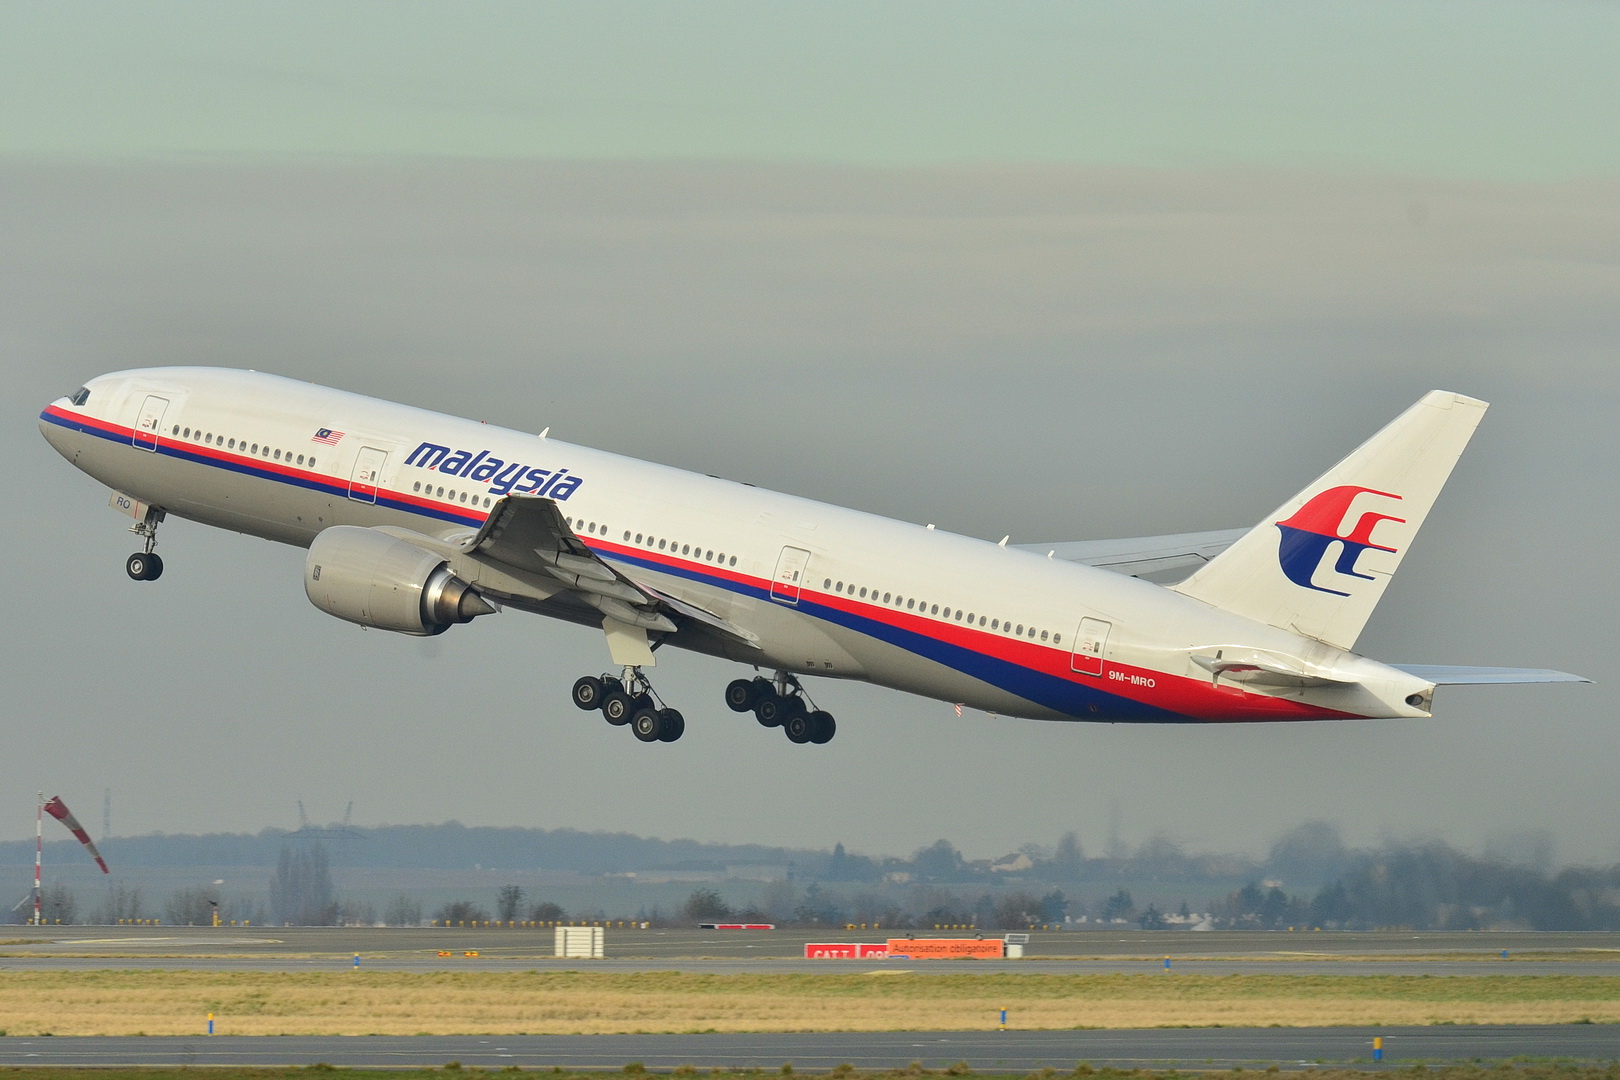 Μalaysia Airlines: Eννέα χρόνια μετά και το μυστήριο με την πτήση MH370 παραμένει – Τα τρία σοκαριστικά σενάρια